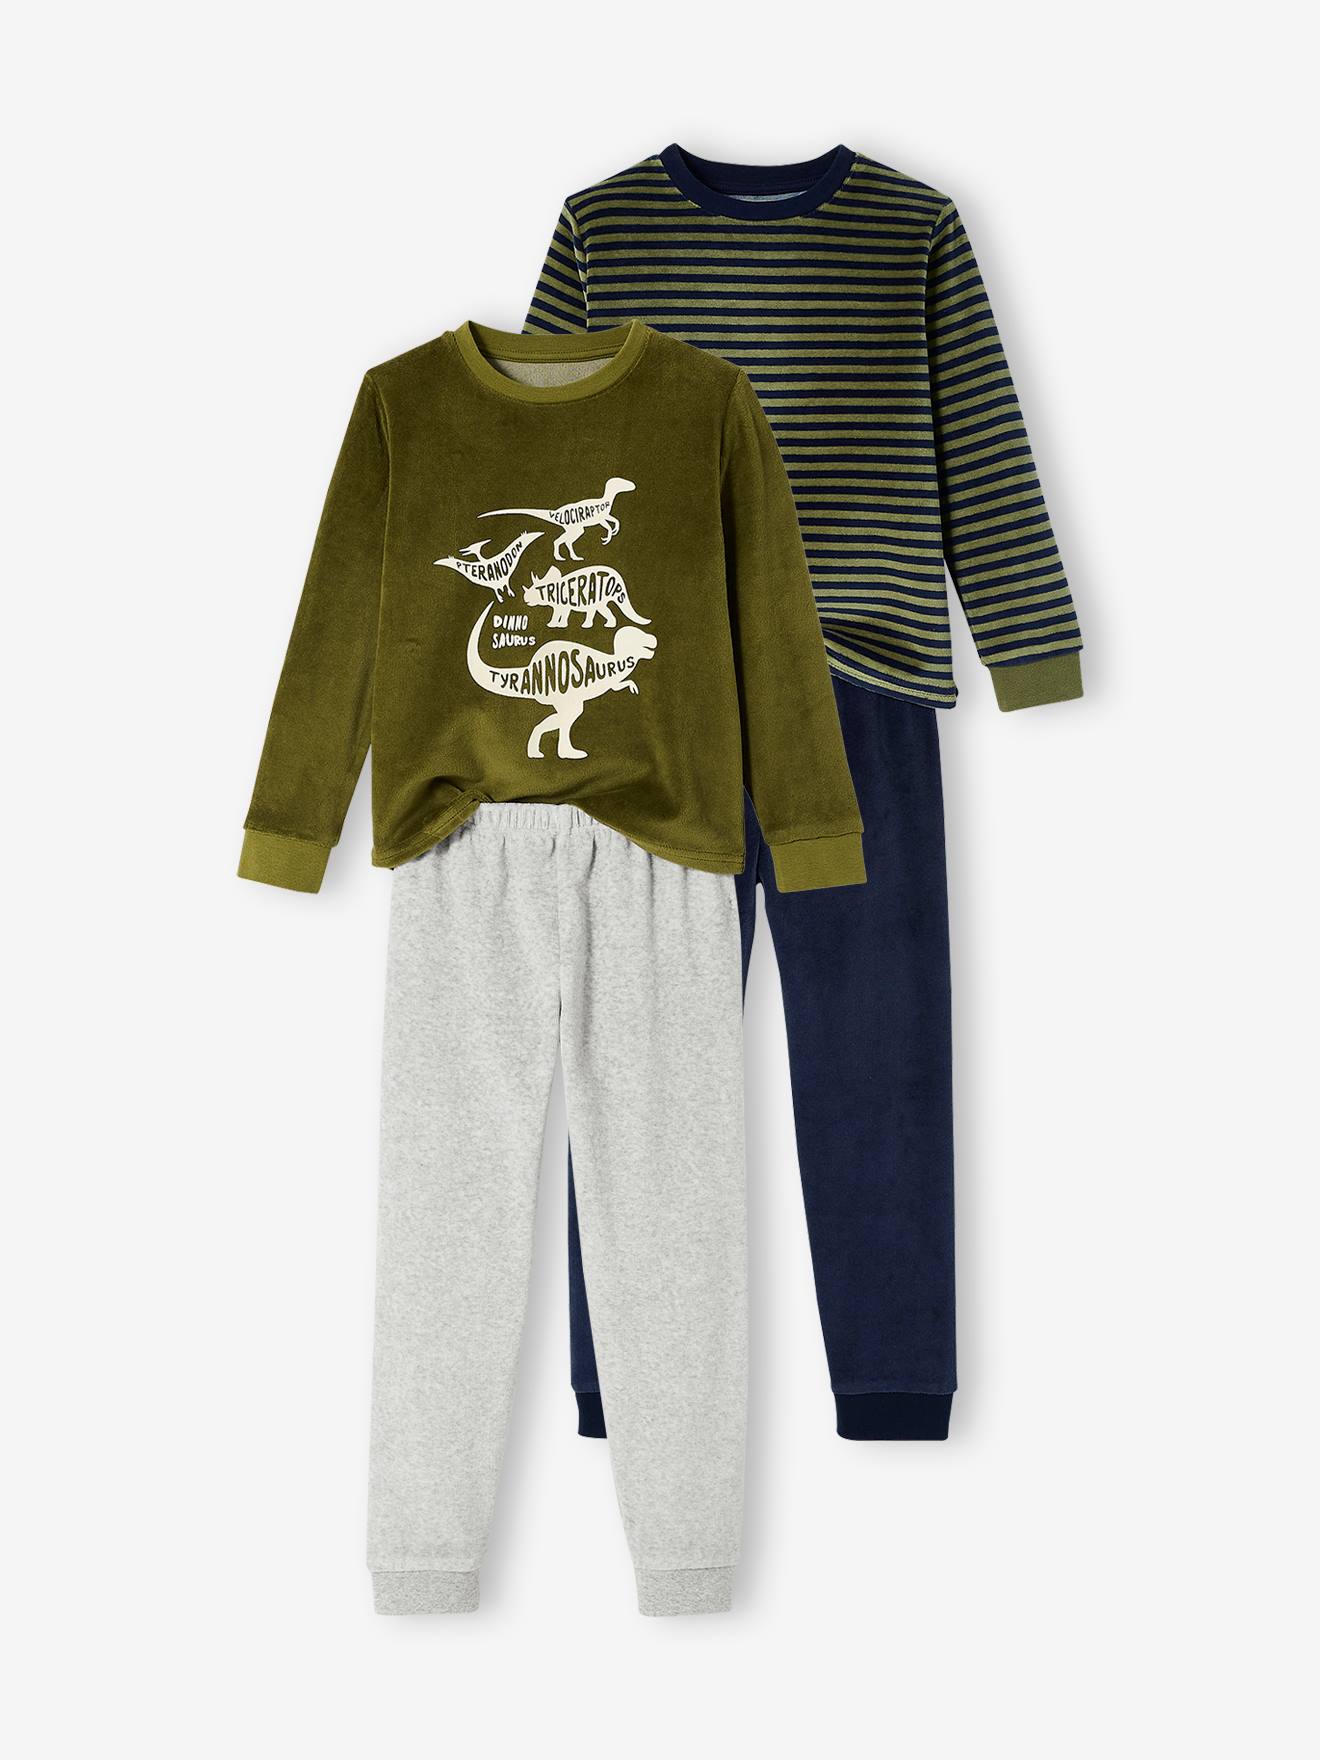 Mode & Accessoires Kleidung Nachtwäsche & Homewear Schlafanzüge Schlafanzug für Jungen SI854 Toy Story 